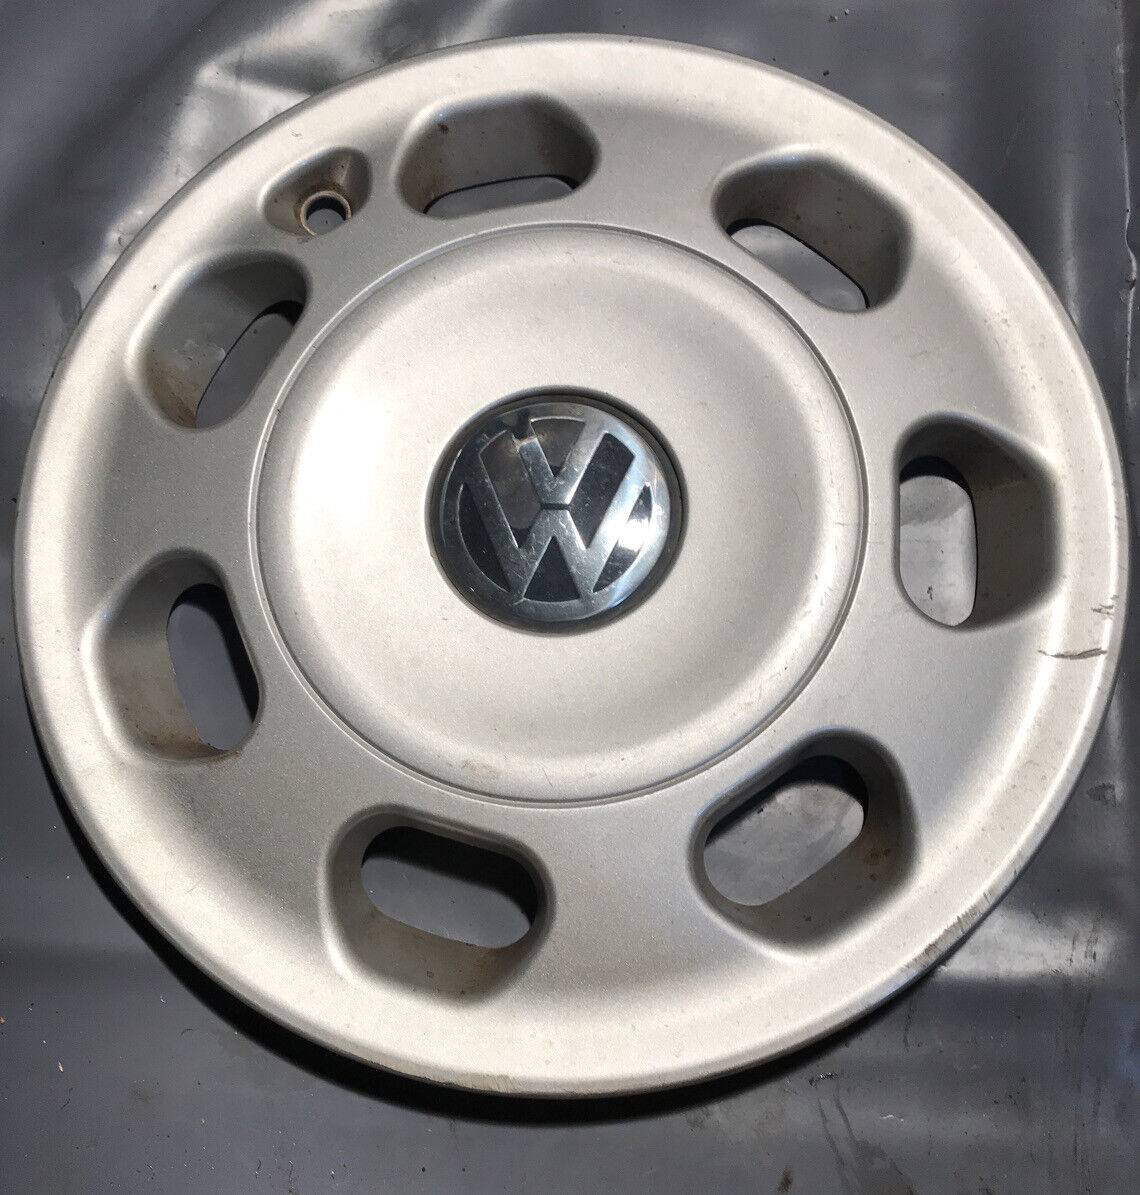 VW OEM Factory Wheel Covers for Passat 96-97 14” Rim 7 Slot 3A0 601 147 A